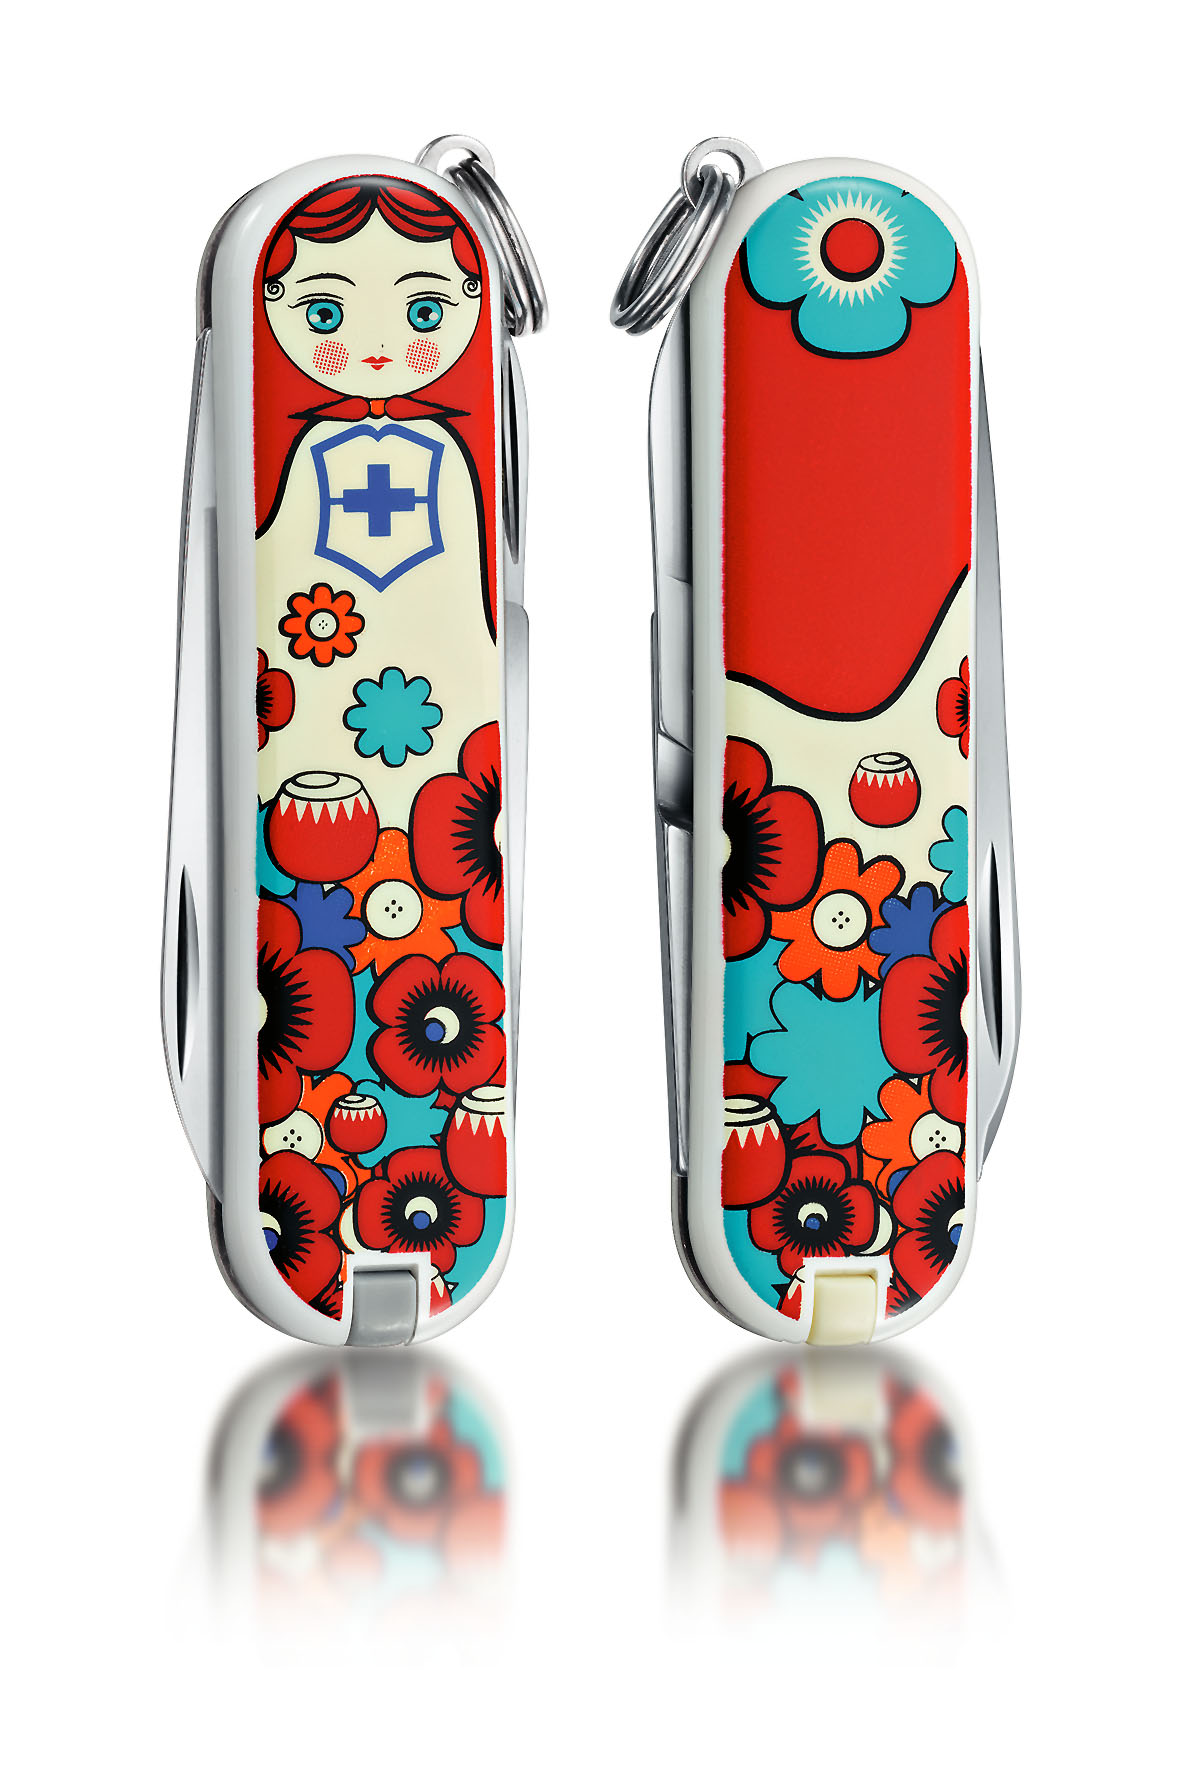 Zum Frauentag angelehnt an die typisch russische Matroschka ist das Design dieses Taschenmessers. Erhältlich ab 18,90 Euro (unverbindliche Preisempfehlung)